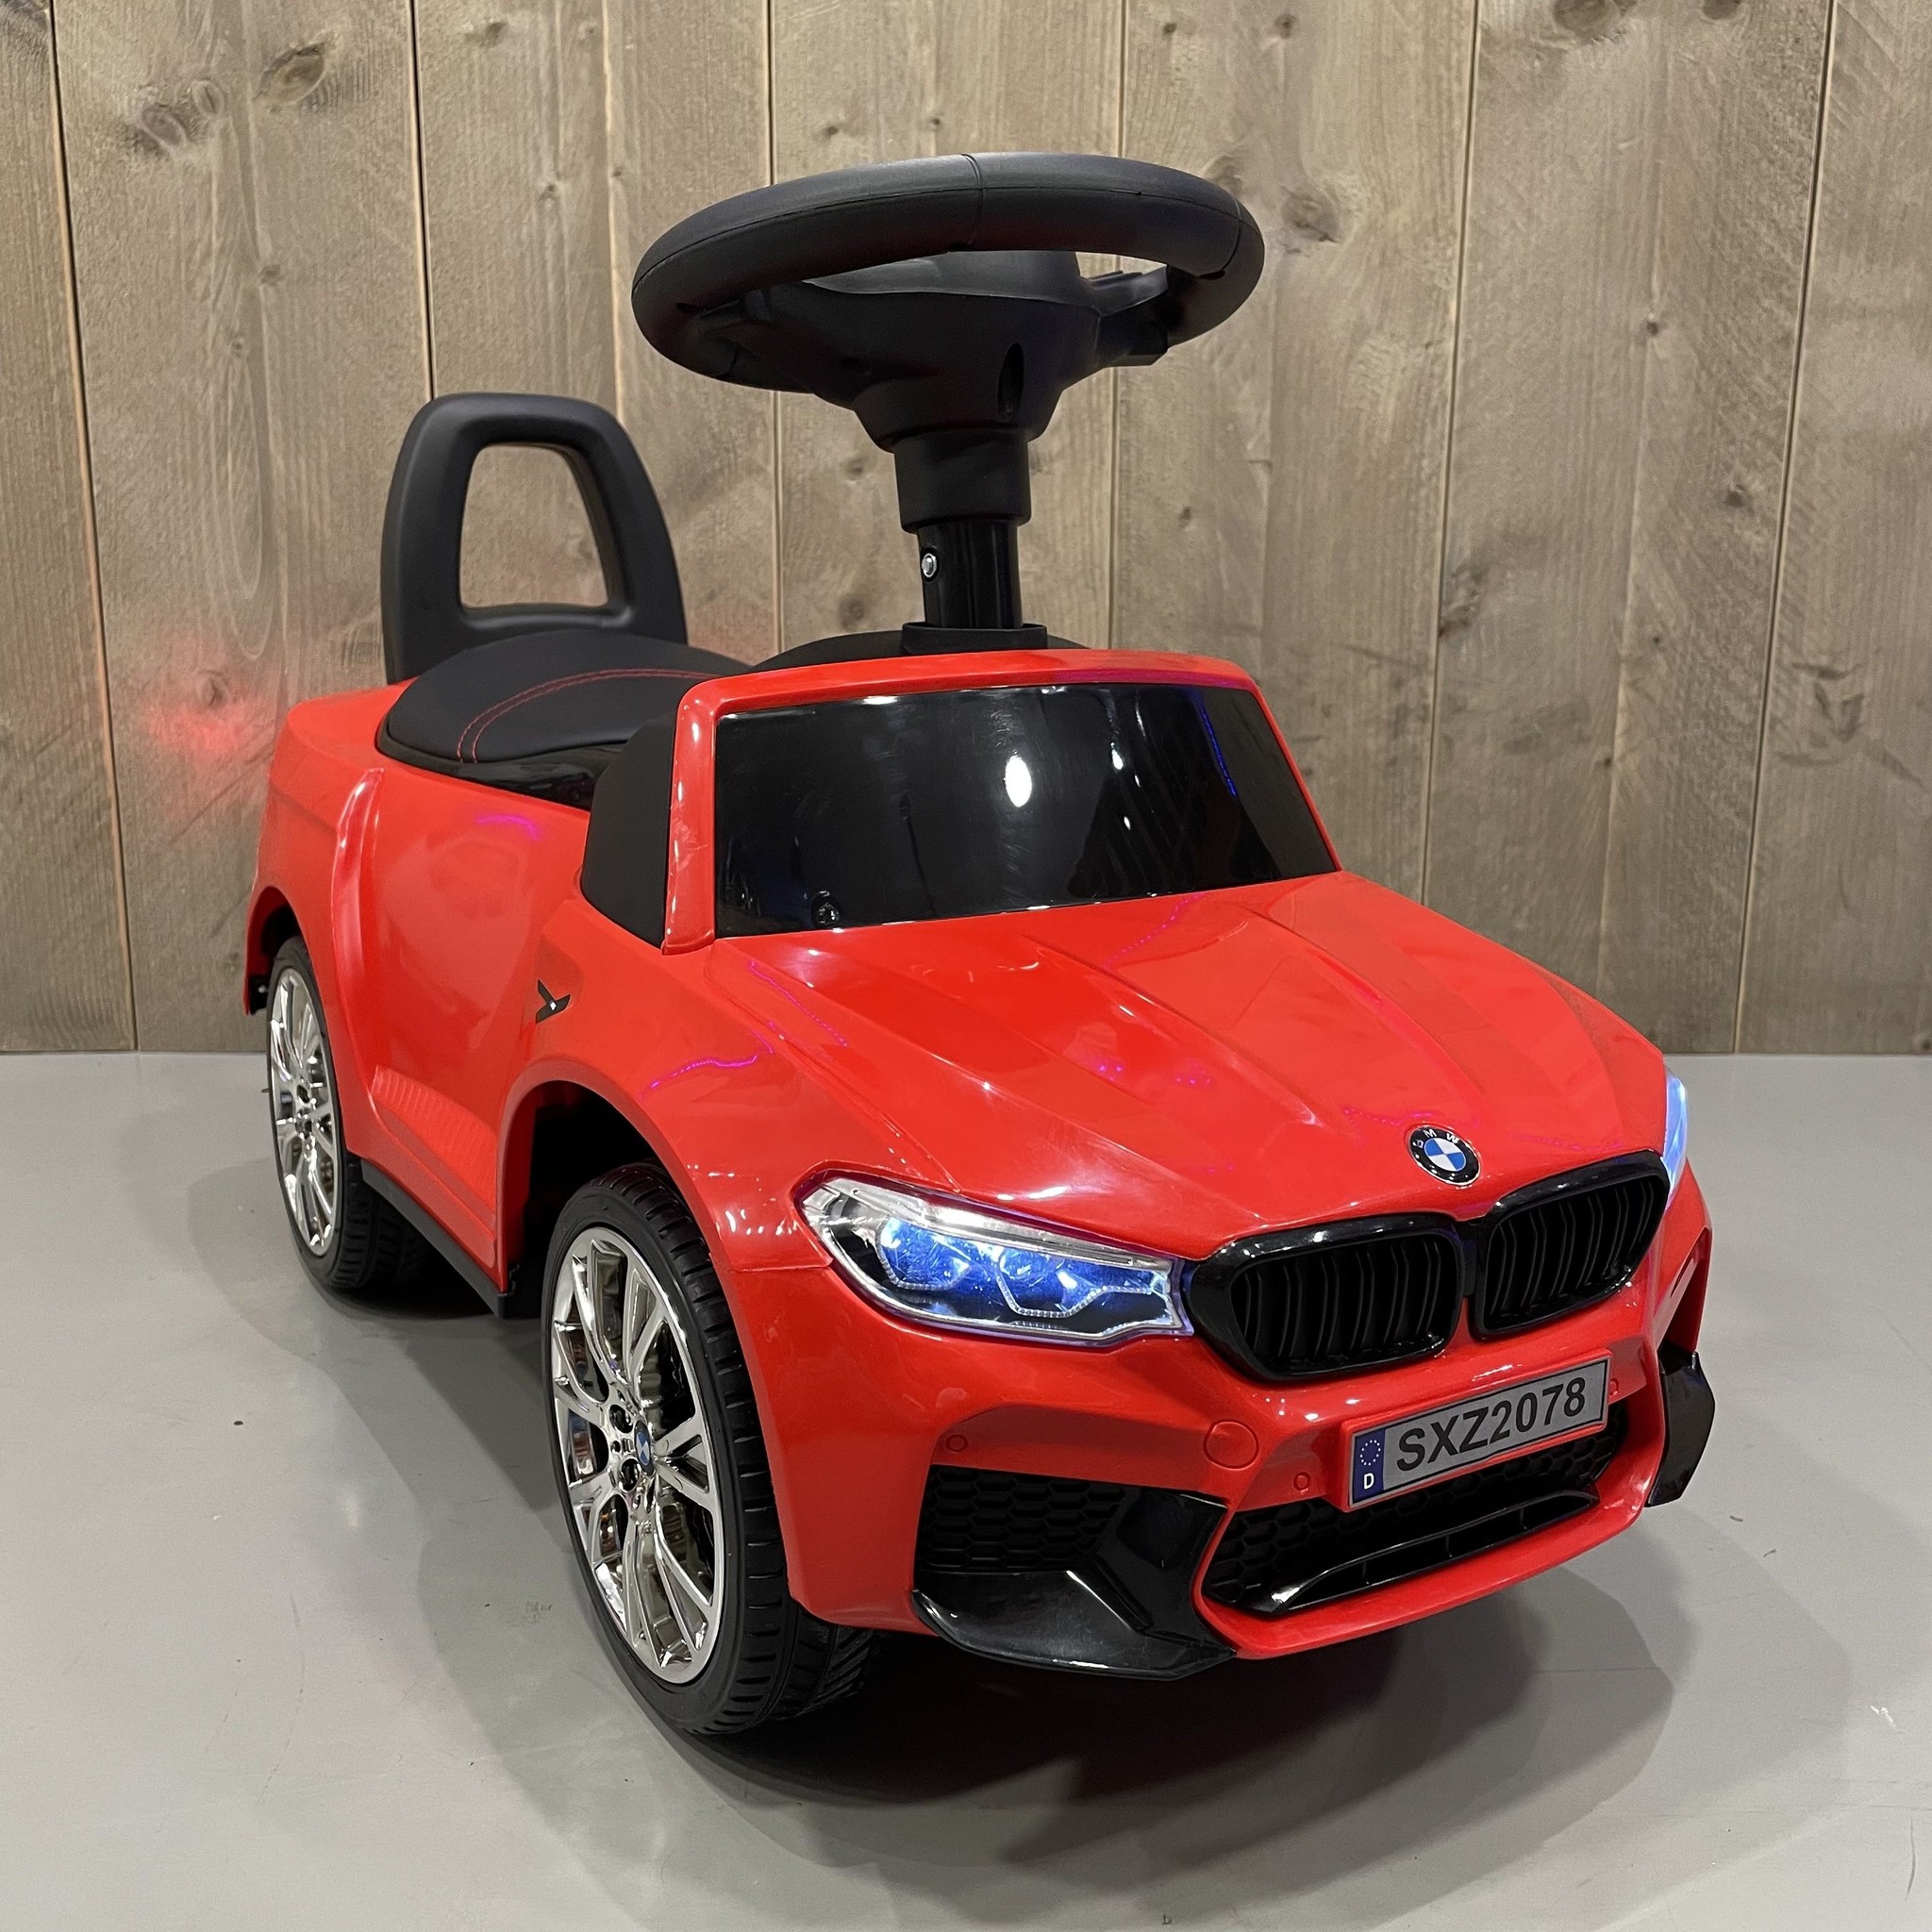 Moment In werkelijkheid rand BMW M5 Loopauto kopen? De Mooiste Loopauto Voor Kids! ✓ - CarKiddo